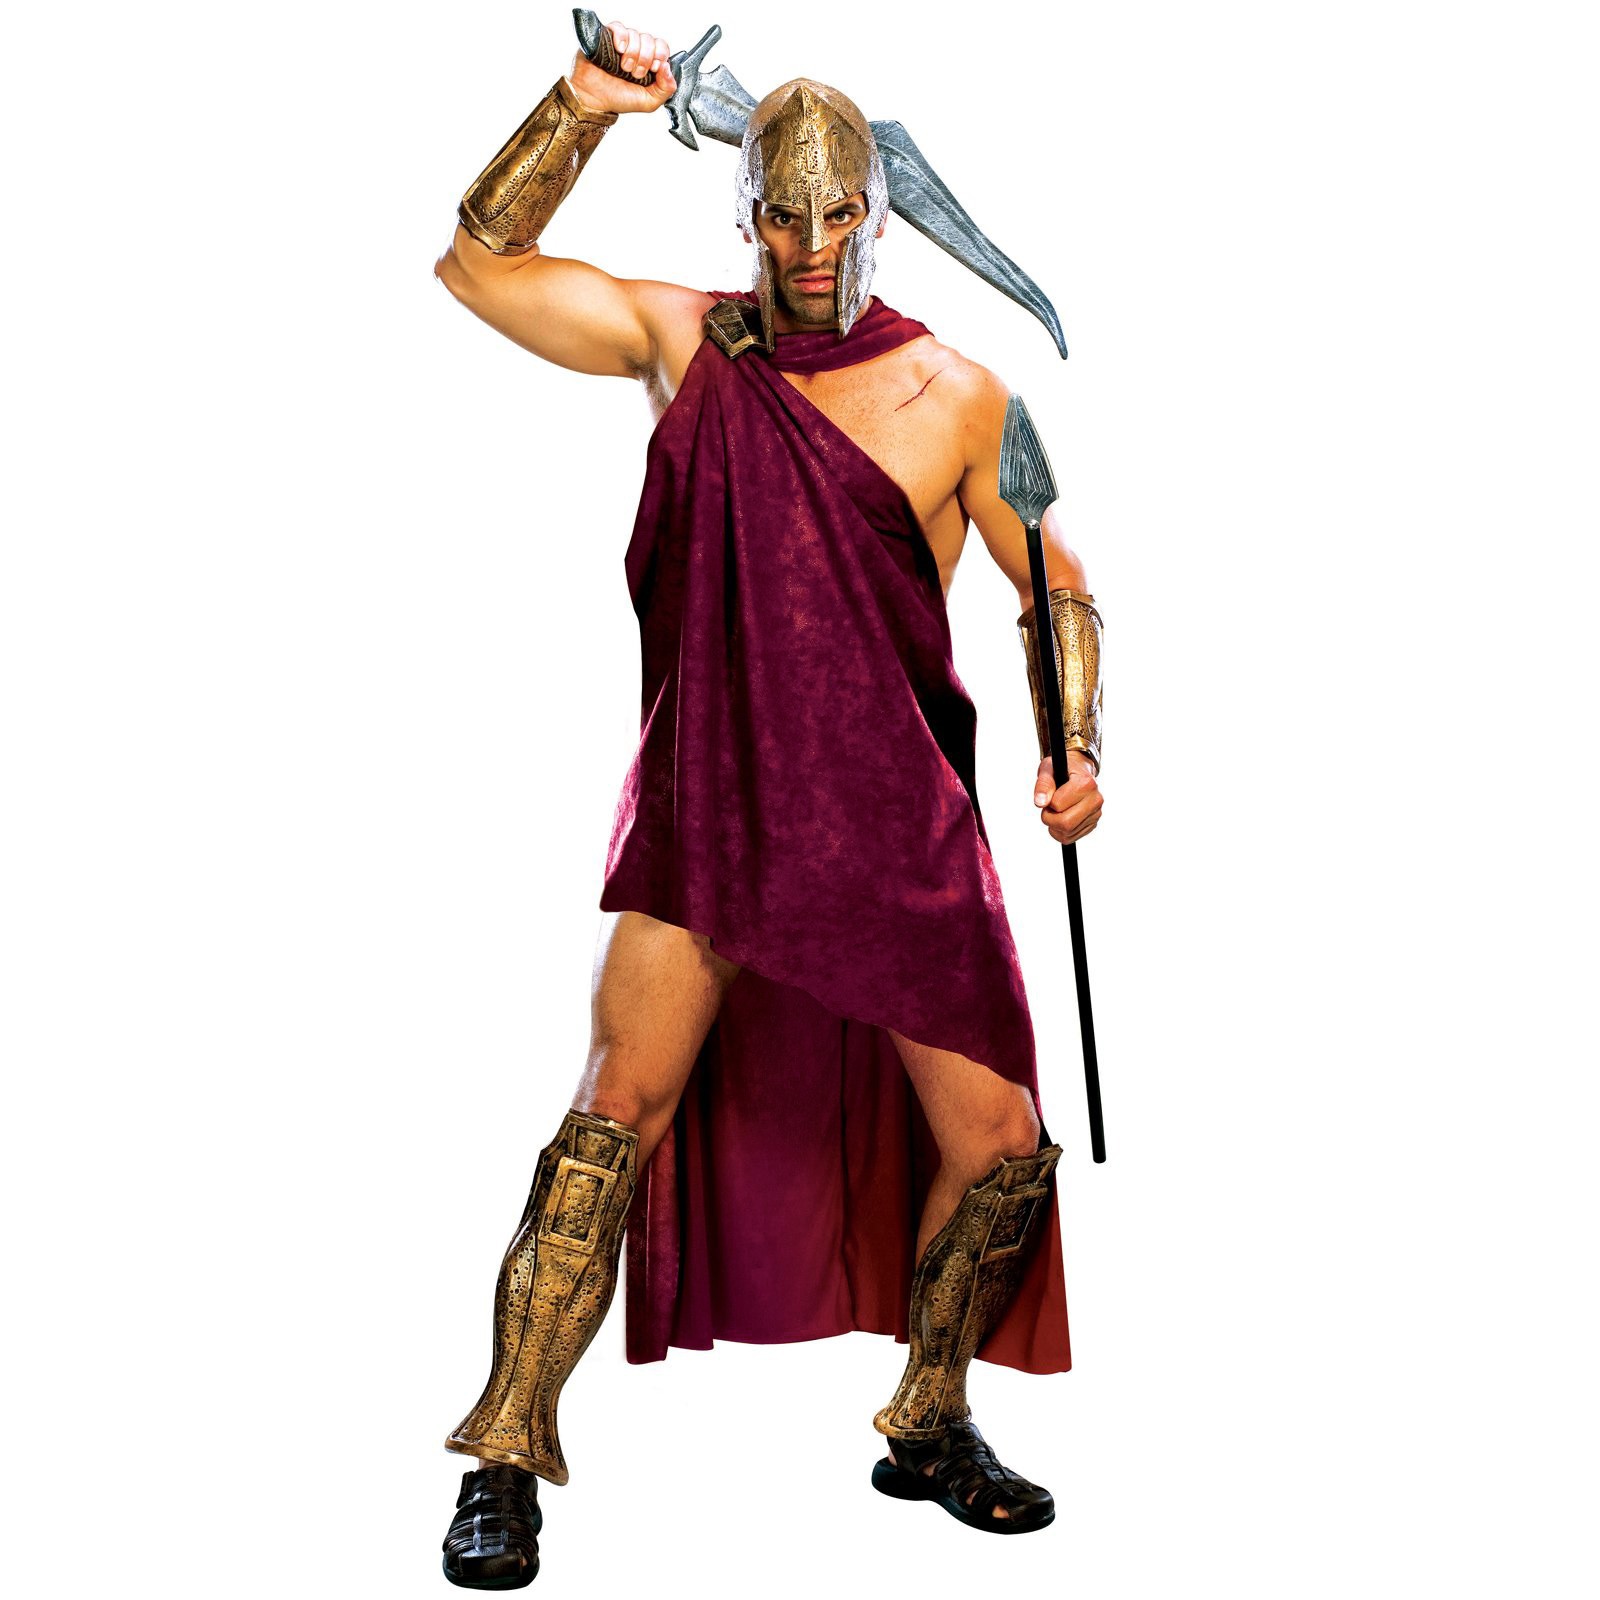  300 Movie Spartan Deluxe Greek Roman Fancy Dress Adult Costume